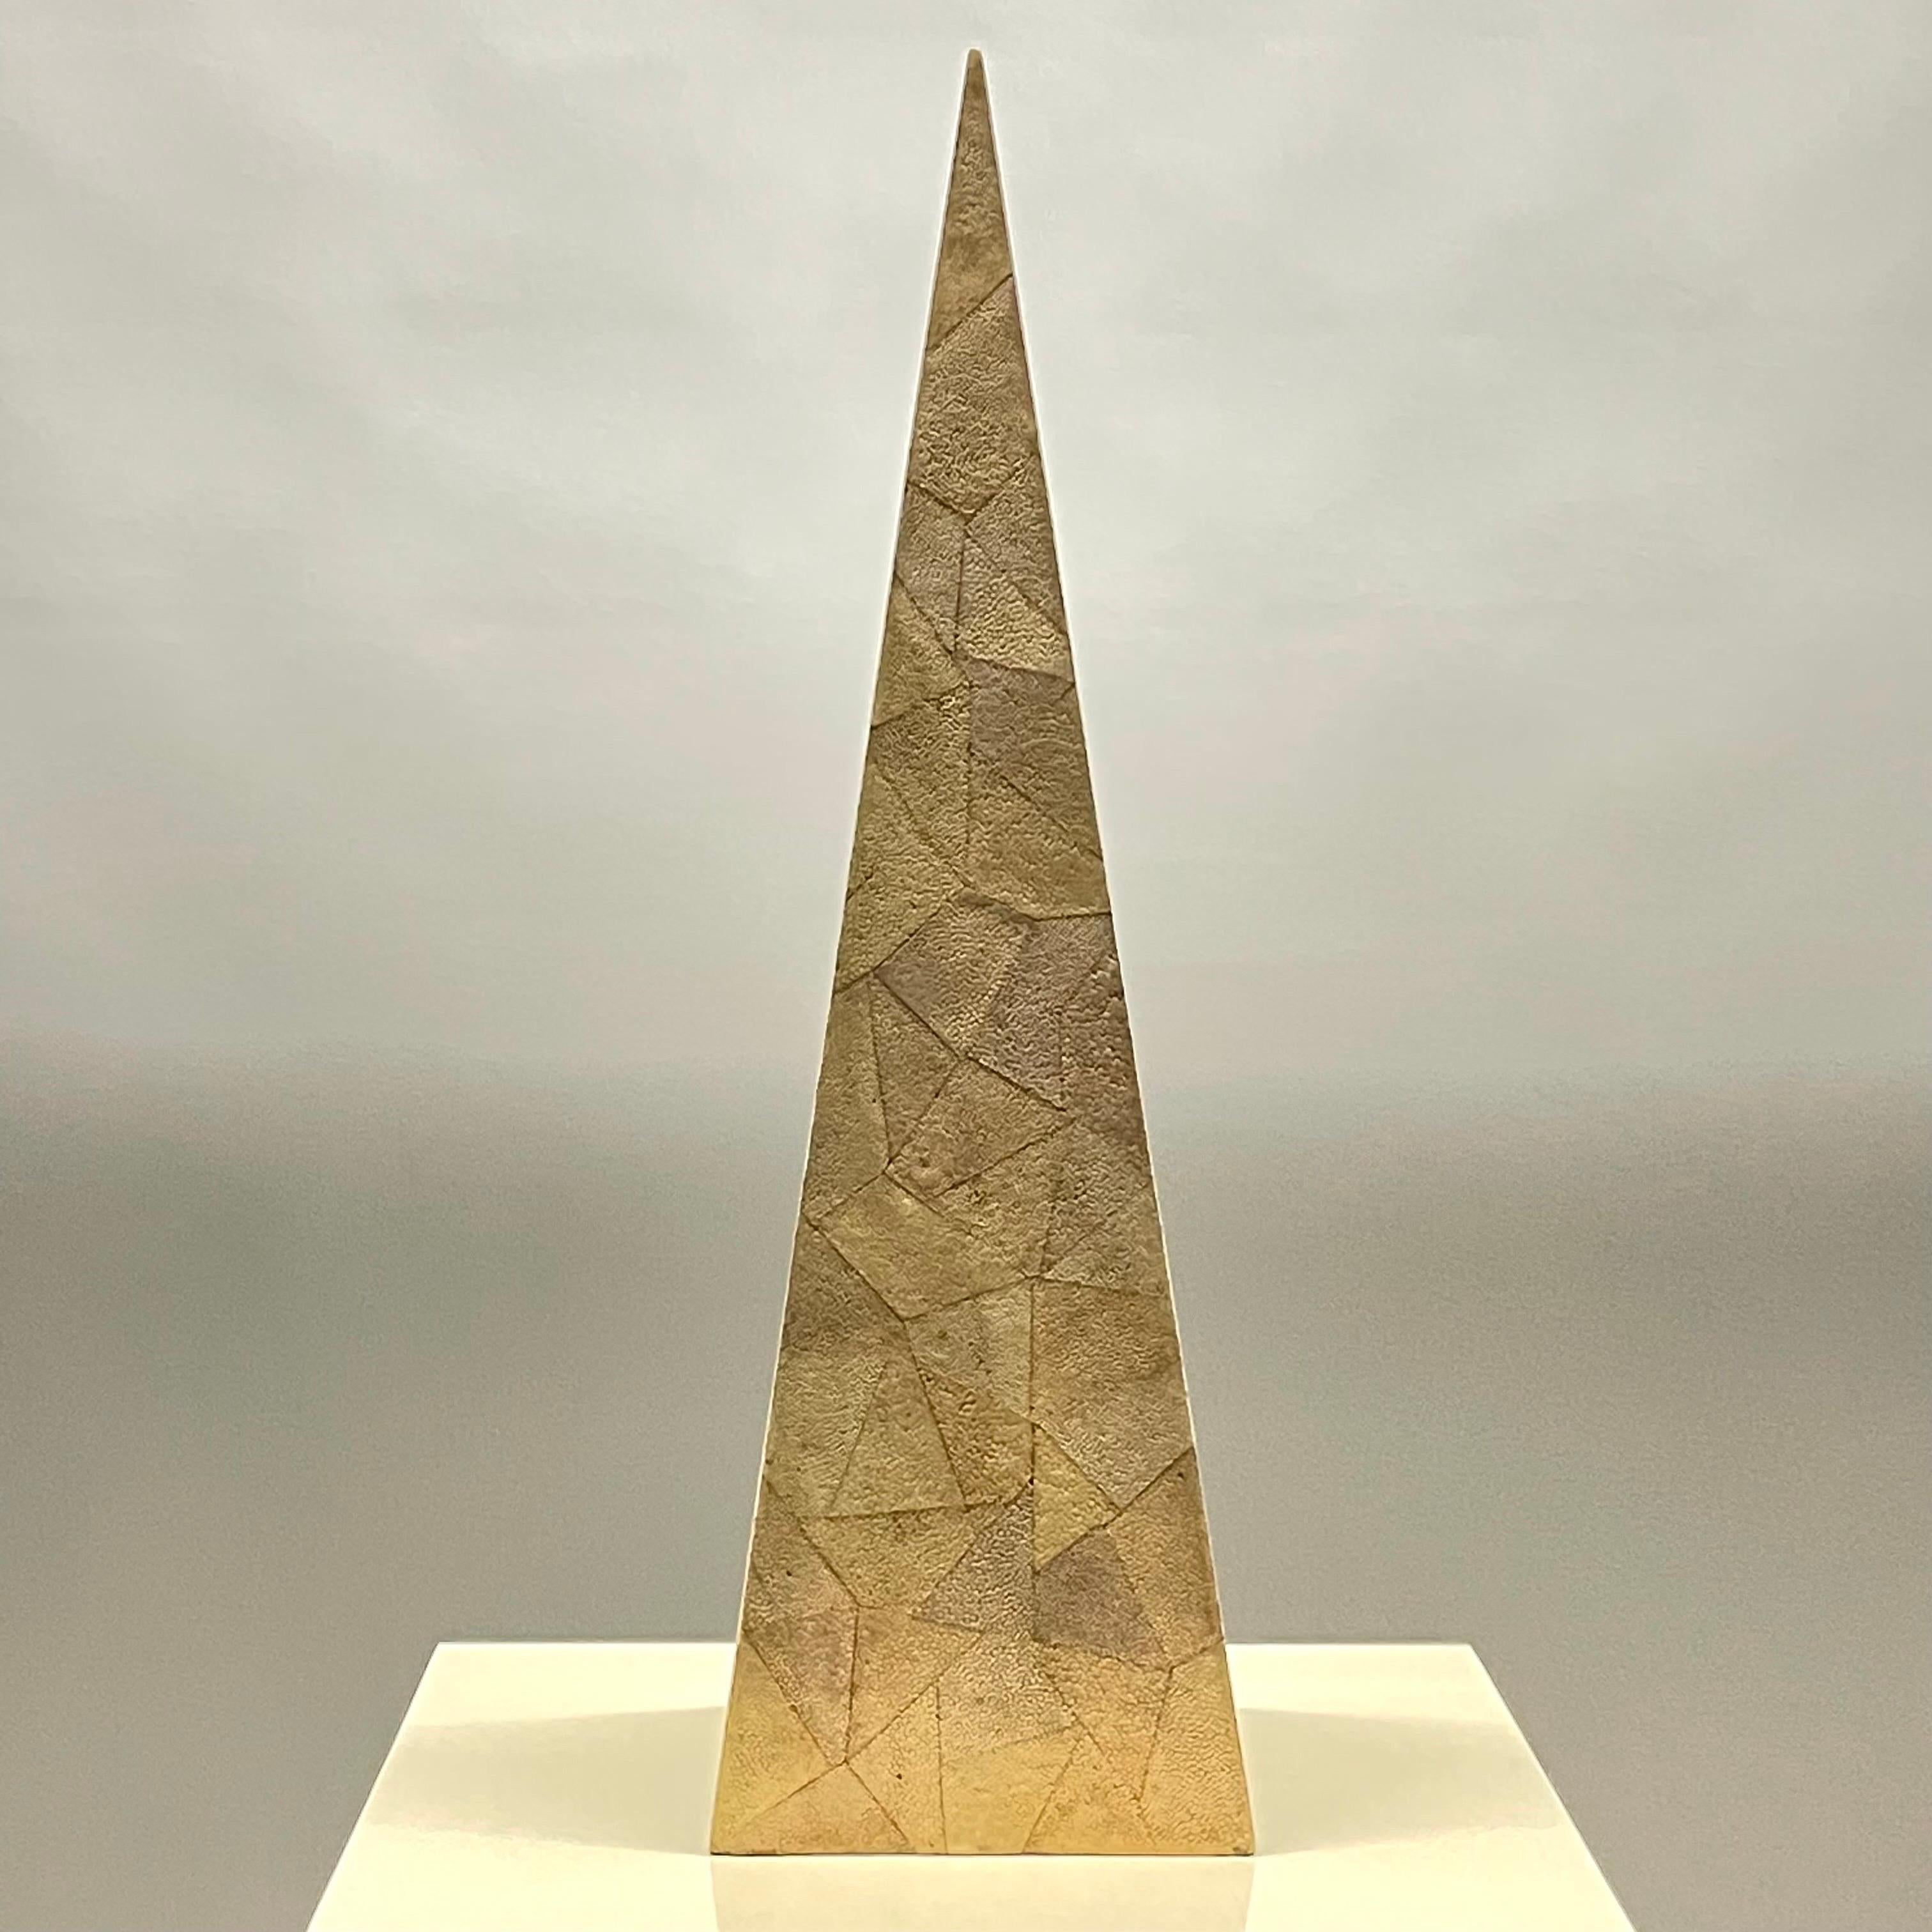 Seltene atemberaubende Obelisk oder Pyramide in einem handgefertigten abstrakten Mosaik neutral shagreen gemacht. Hergestellt auf den Philippinen von Maitland-Smith, LTD. Ca. 1990er Jahre.